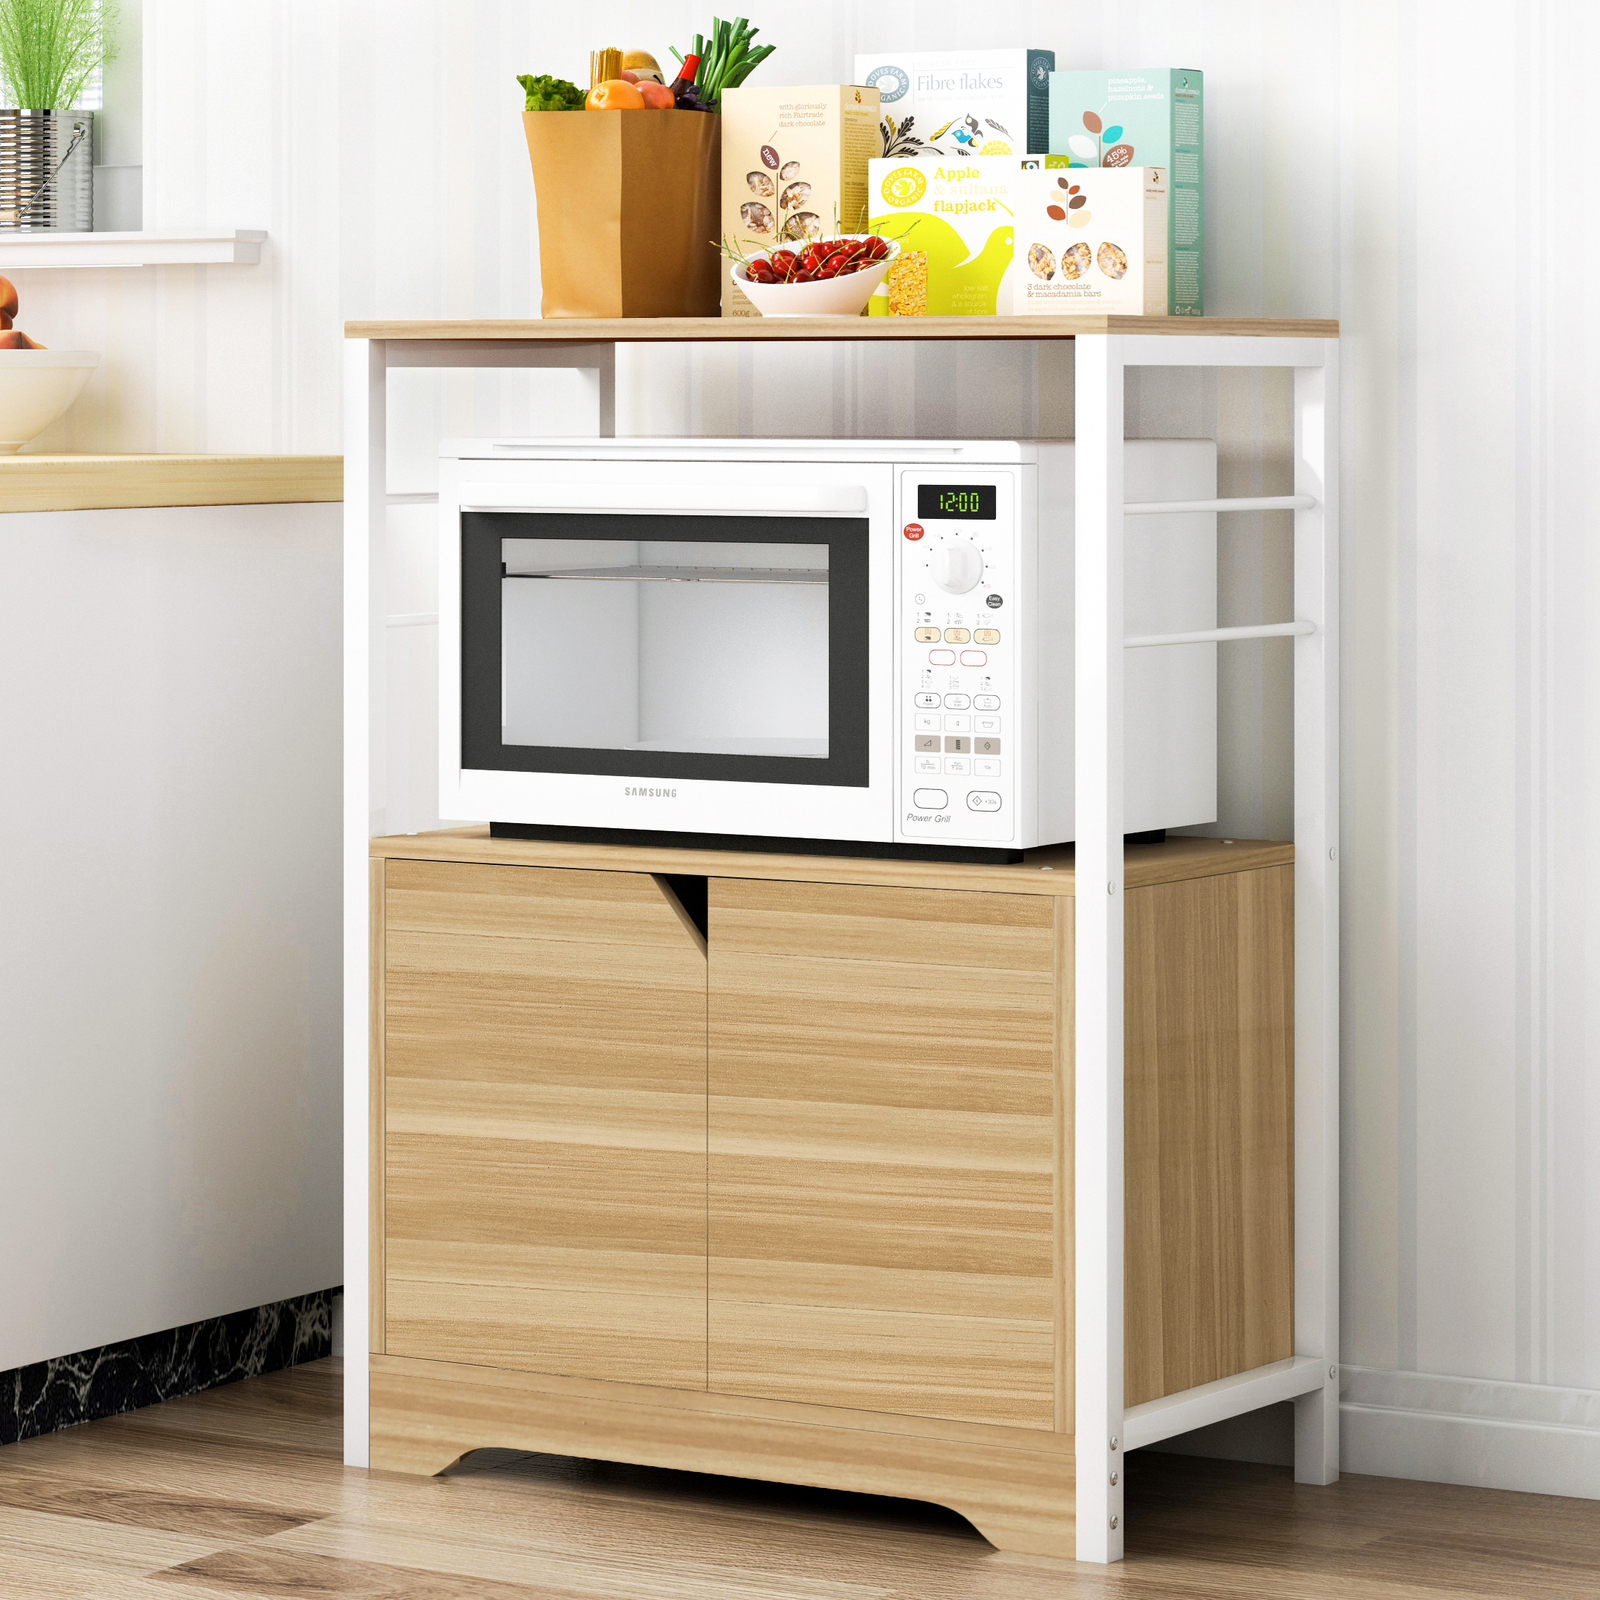 2 Level Arena Organizer Kitchen, Microwave Cabinet With Storage Au